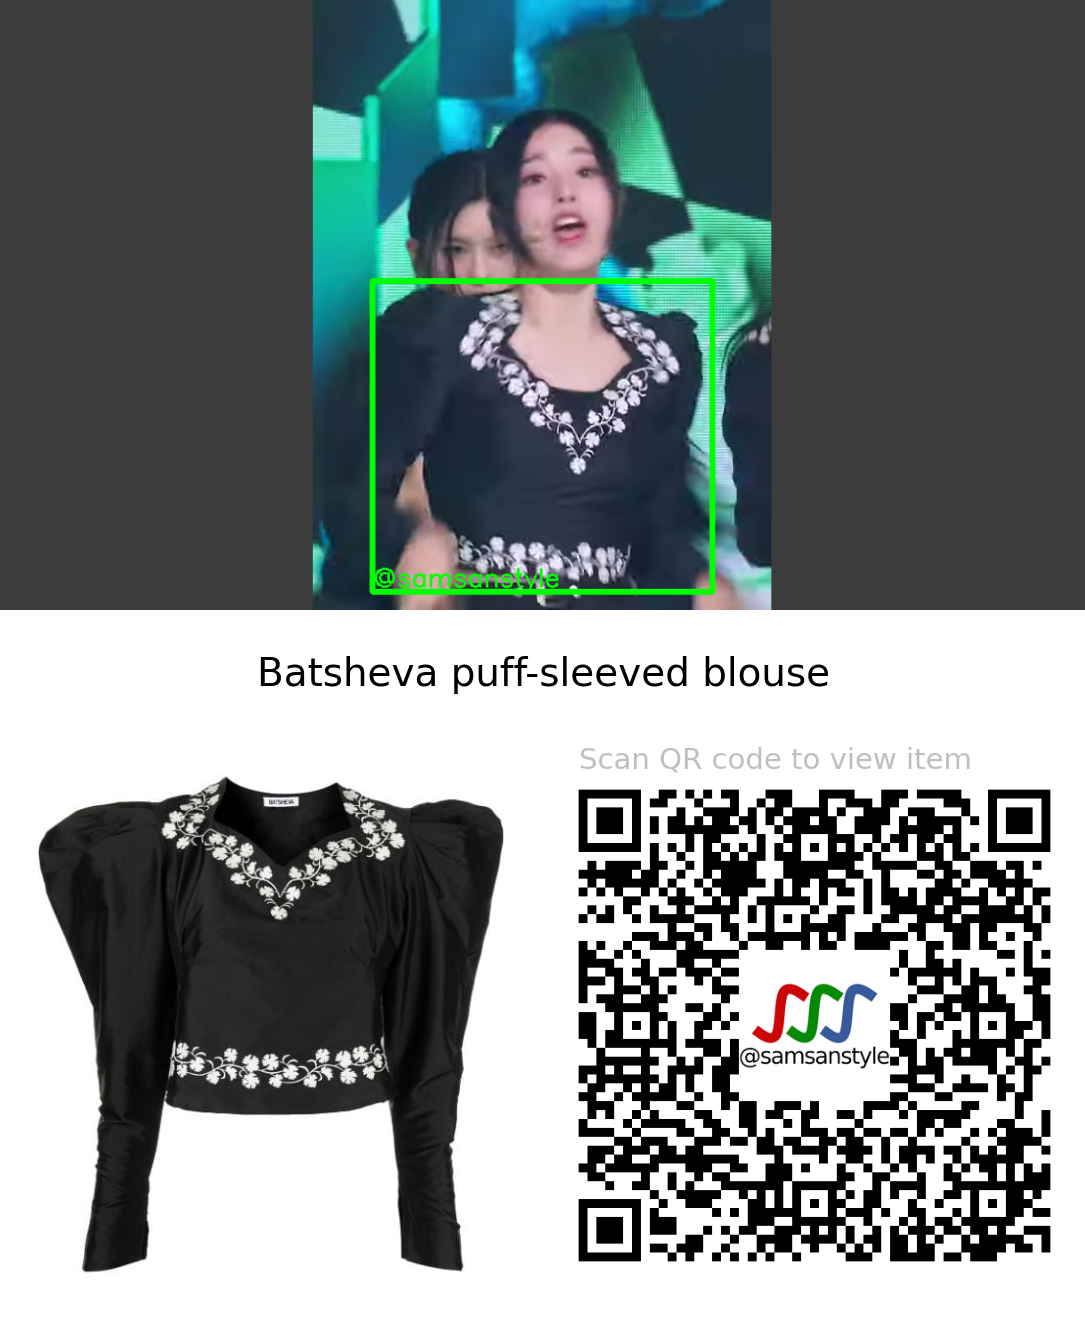 NMIXX Jinni | DICE SBS Inkigayo | Batsheva puff-sleeved blouse